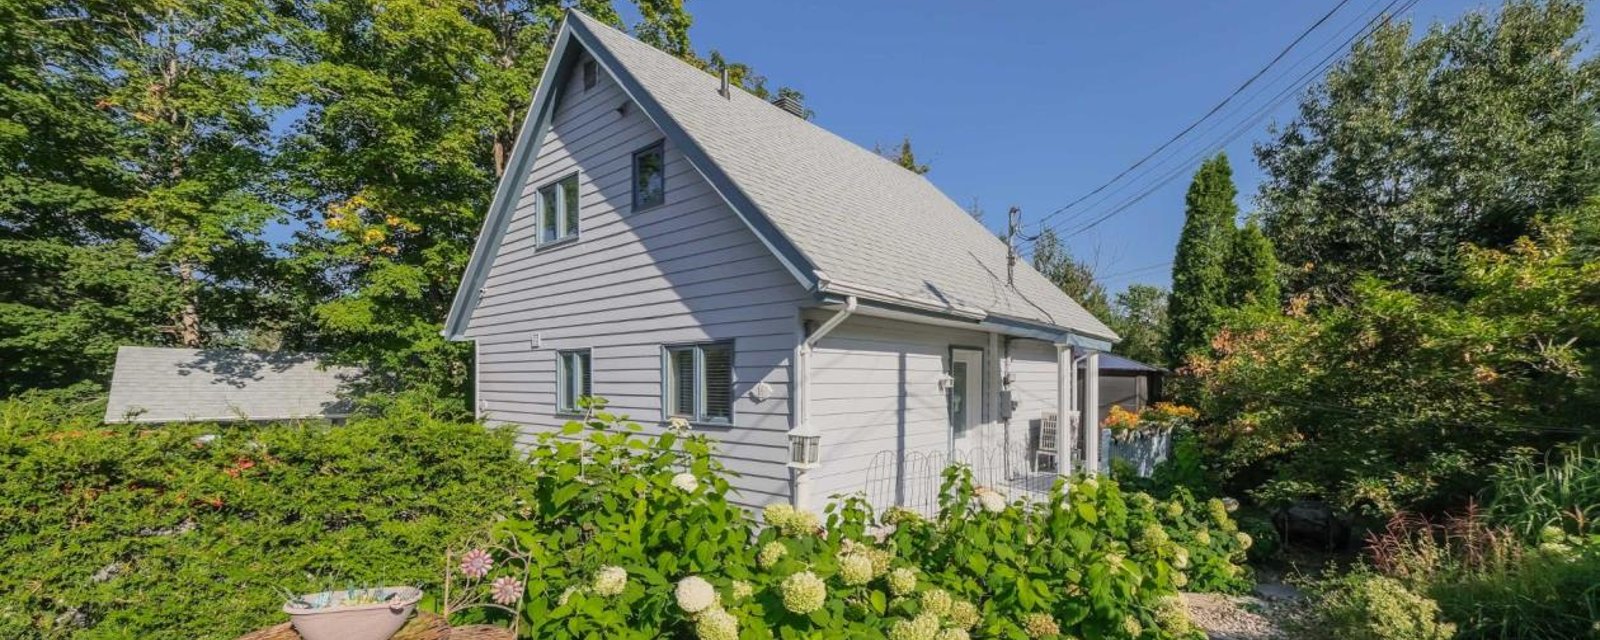 Tout meublé à 469 000$! Joli cottage clés en main à distance de marche du pittoresque village de Saint-Sauveur